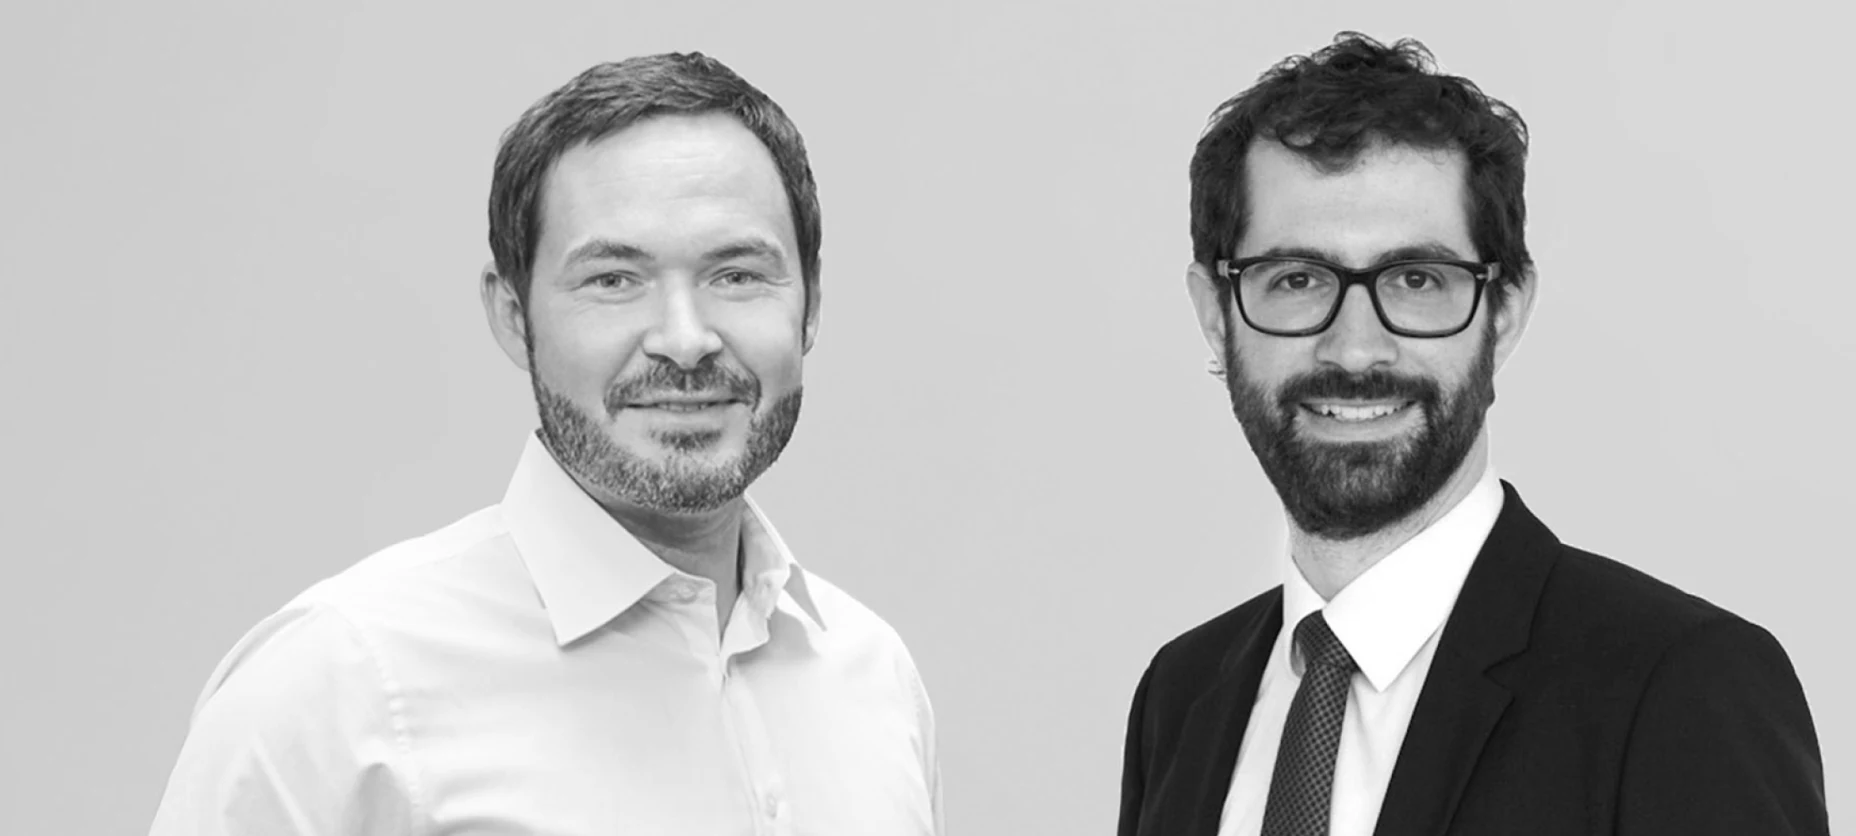 Portraitbild - Martin Schneider, Geschäftsführer der Allvest GmbH, und Dr. Andreas Ott, Head of Investment Strategy der Allianz Investment Management SE